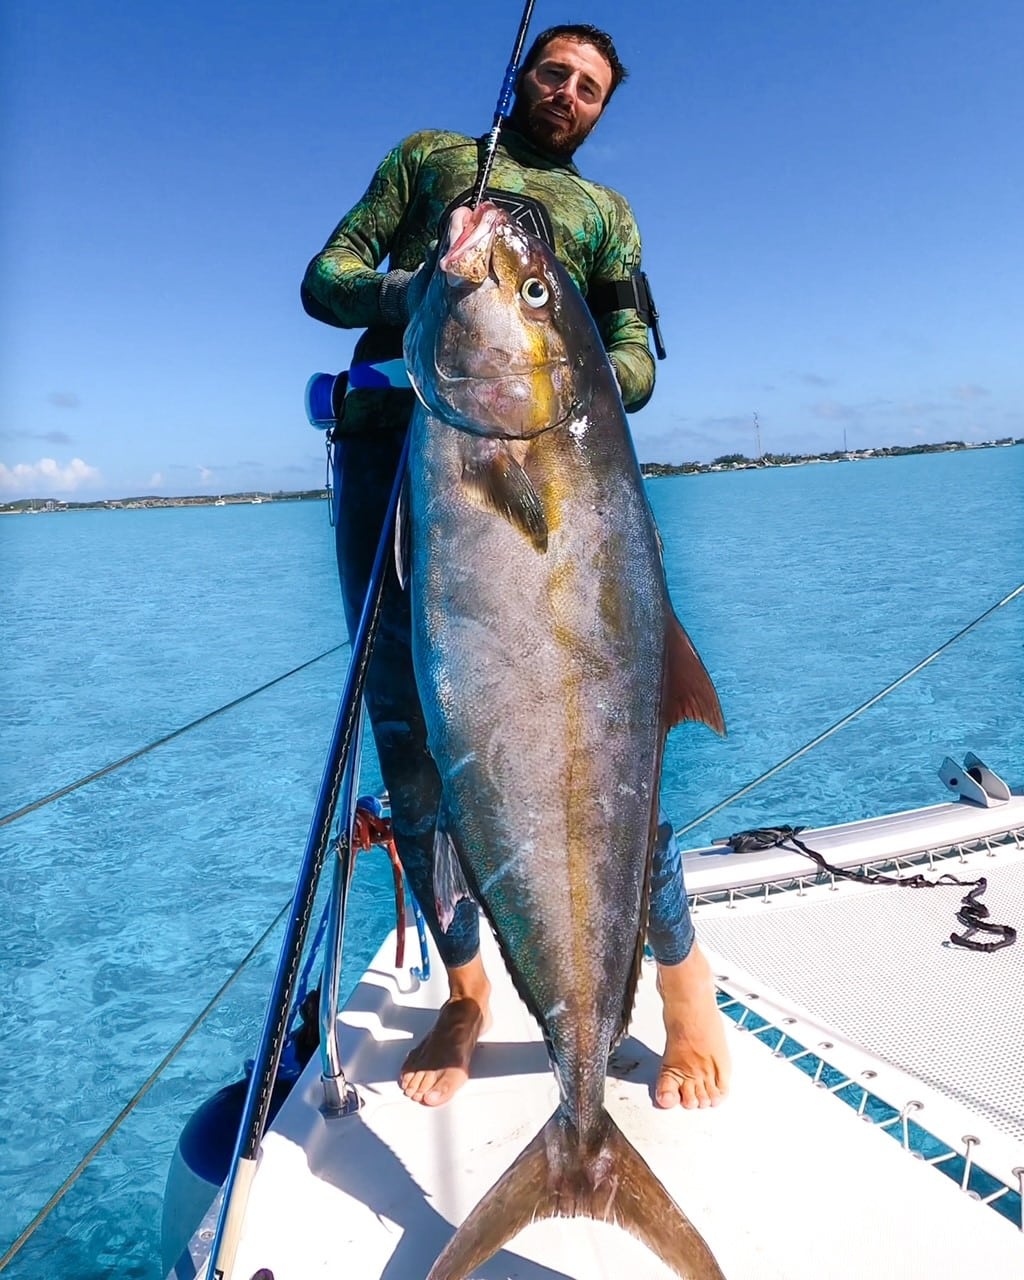 Raf Echemendia with a giant tuna